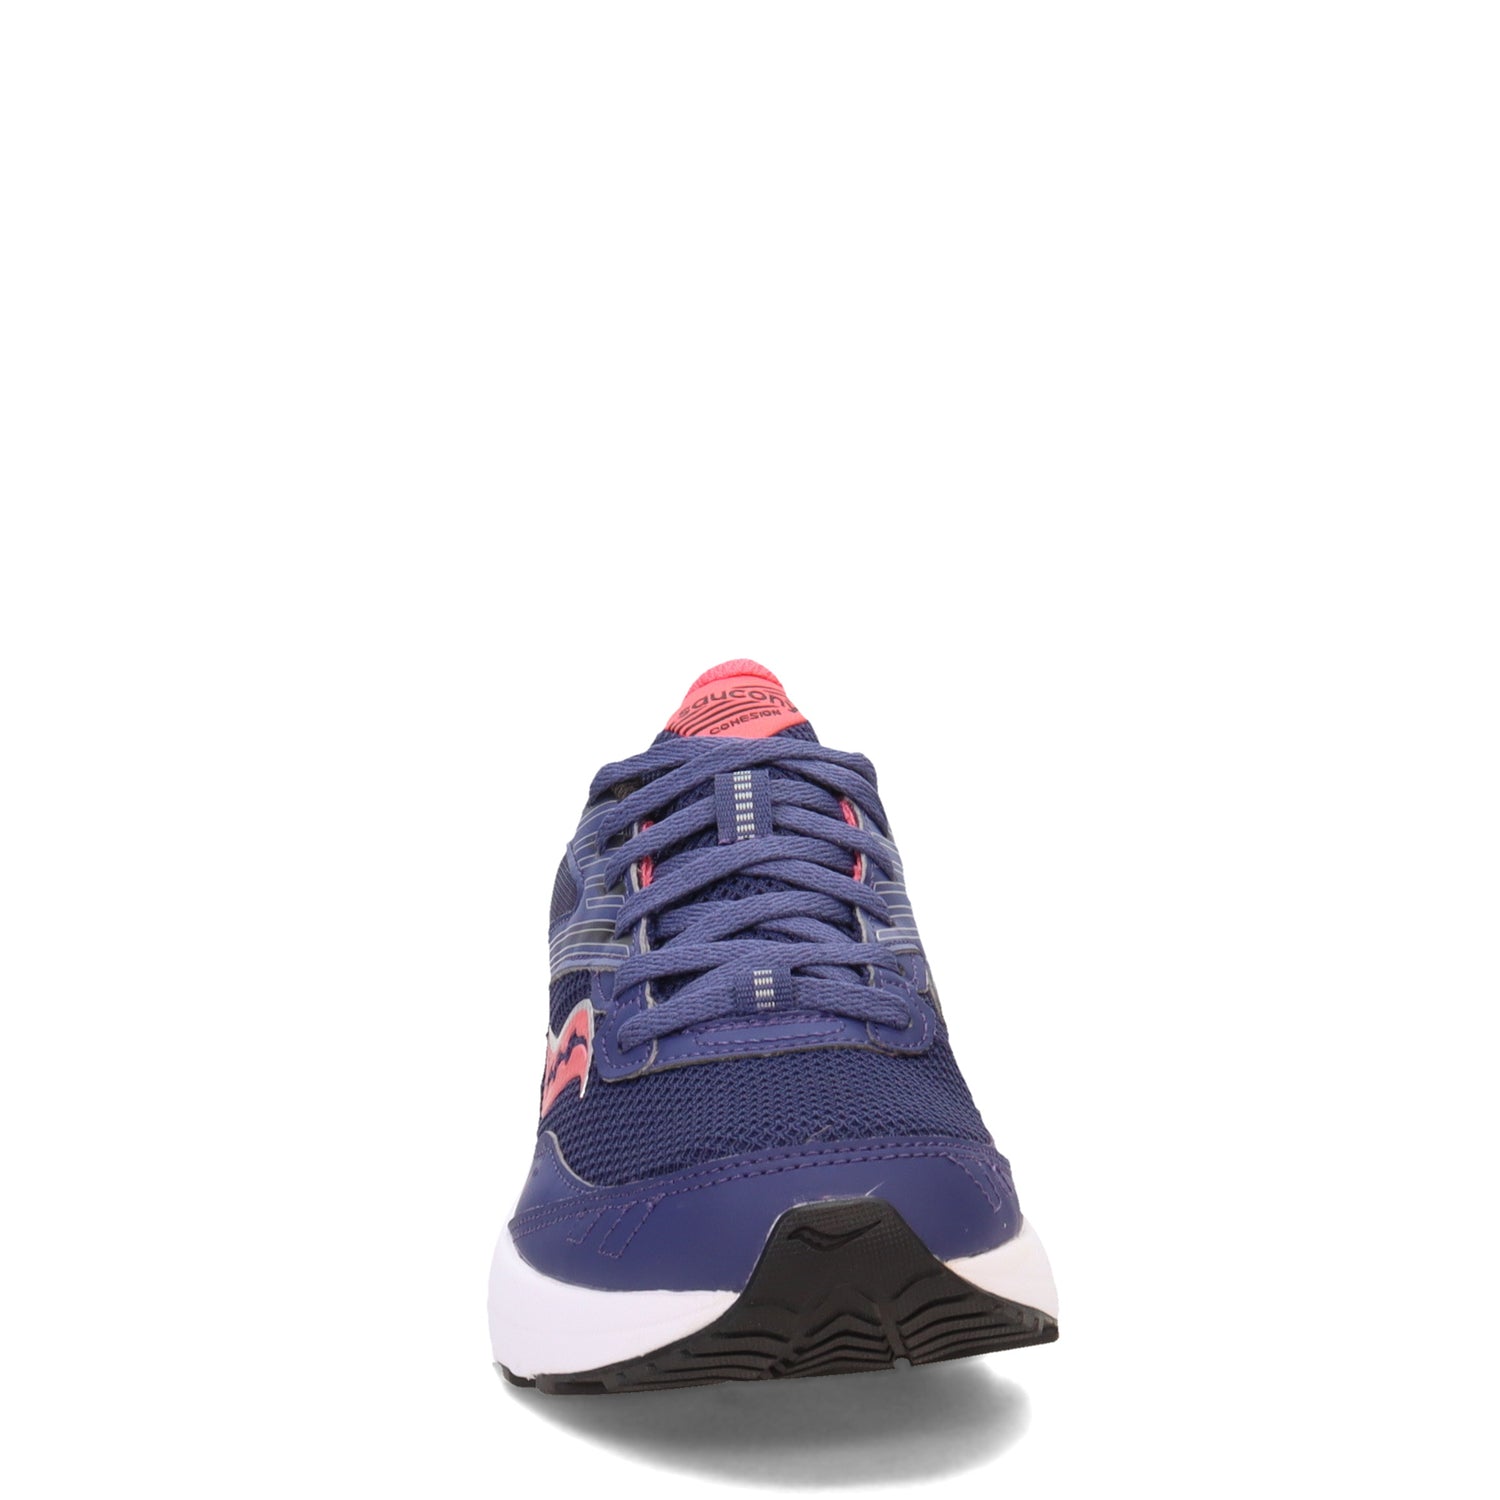 Peltz Shoes  Women's Saucony Cohesion 15 Running Shoe Cobalt/Punch S10701-18